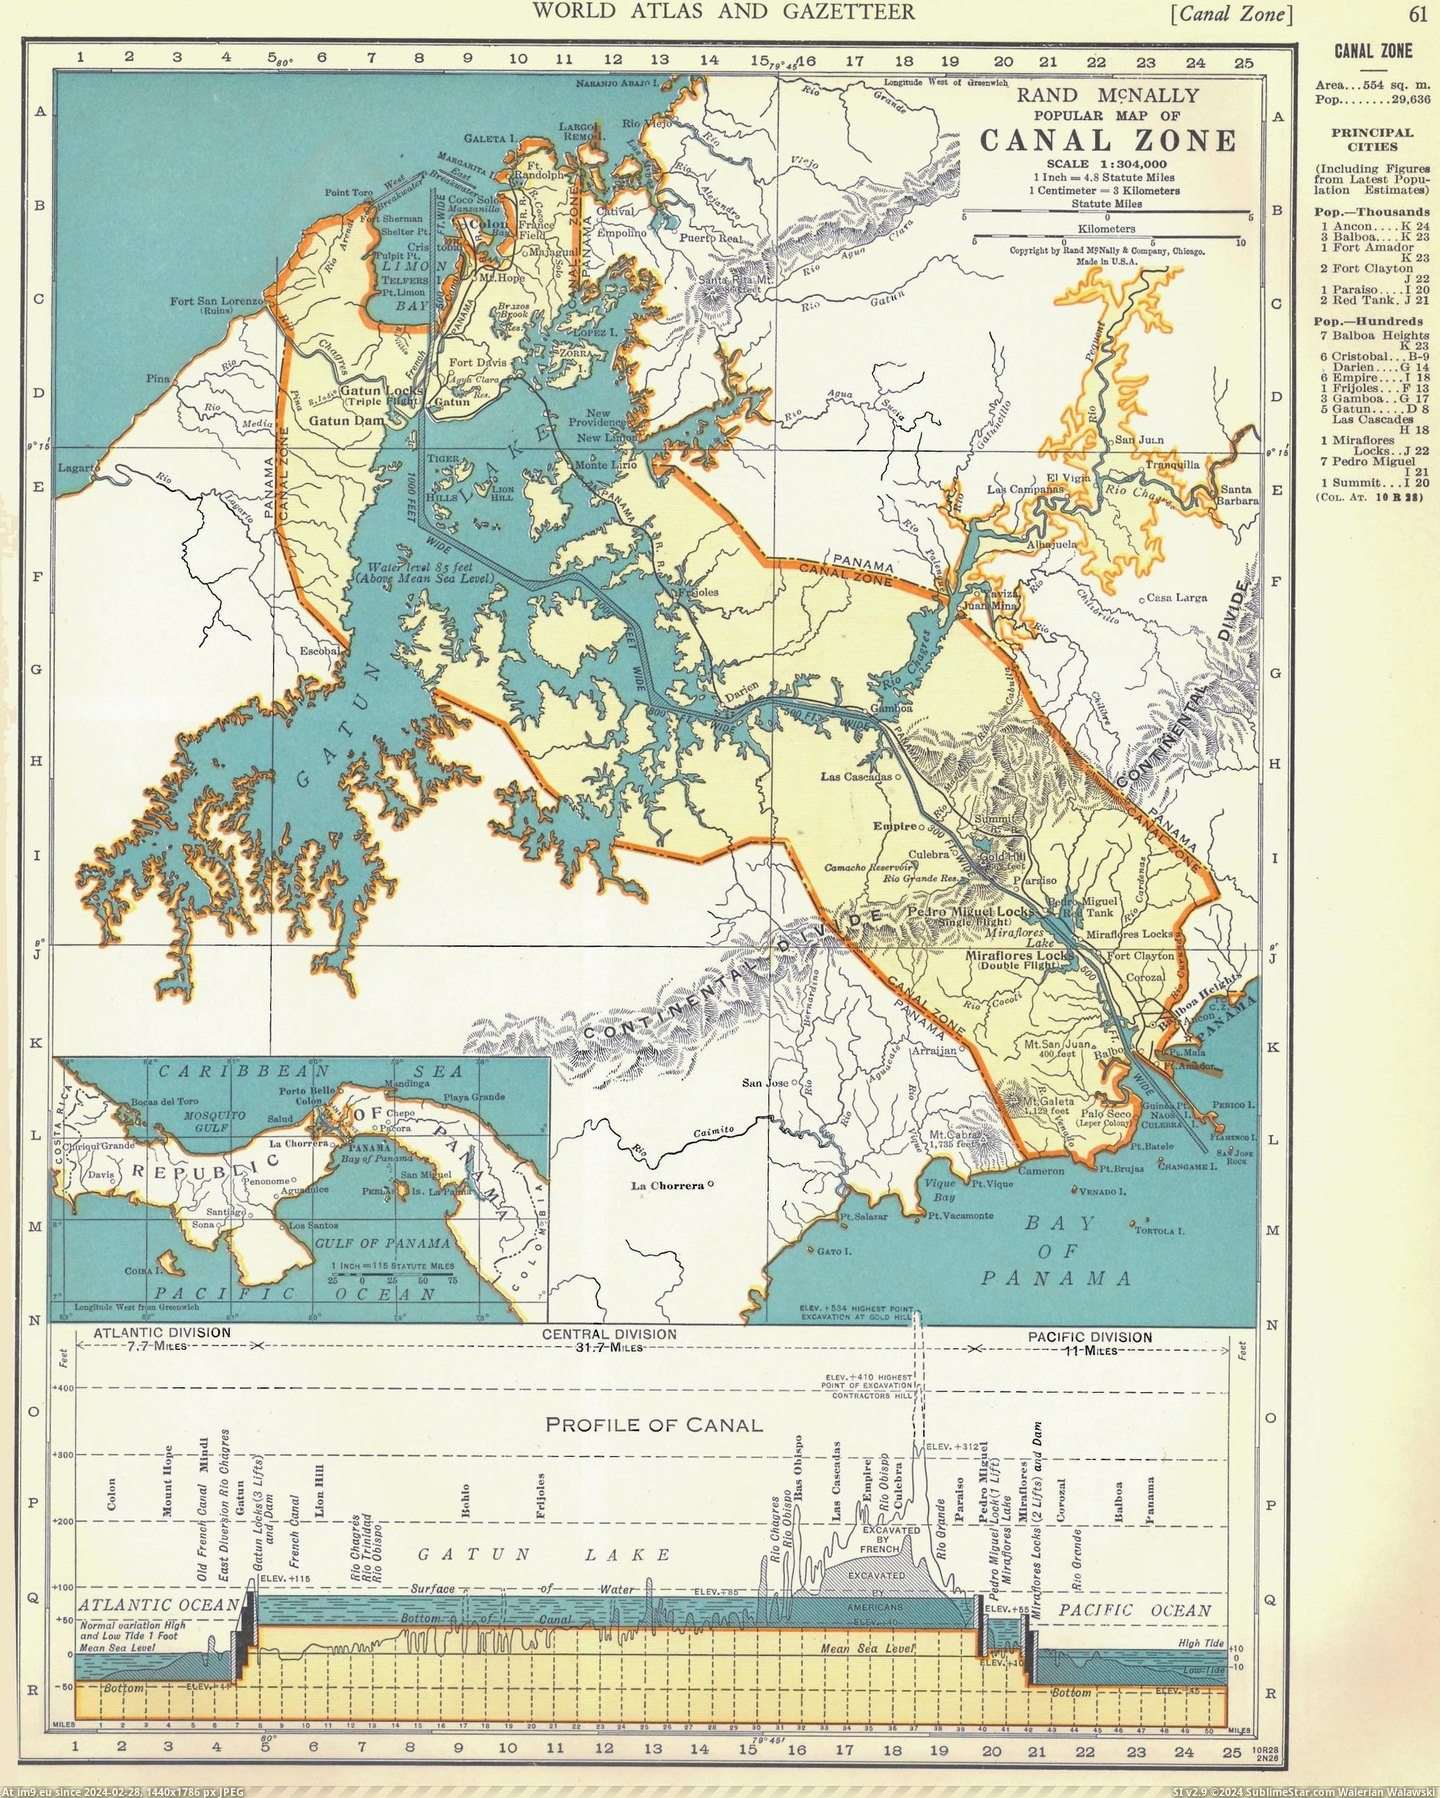 #Panama #Zone #Canal [Mapporn] Panama Canal Zone 1939 [2073x2583] Pic. (Bild von album My r/MAPS favs))